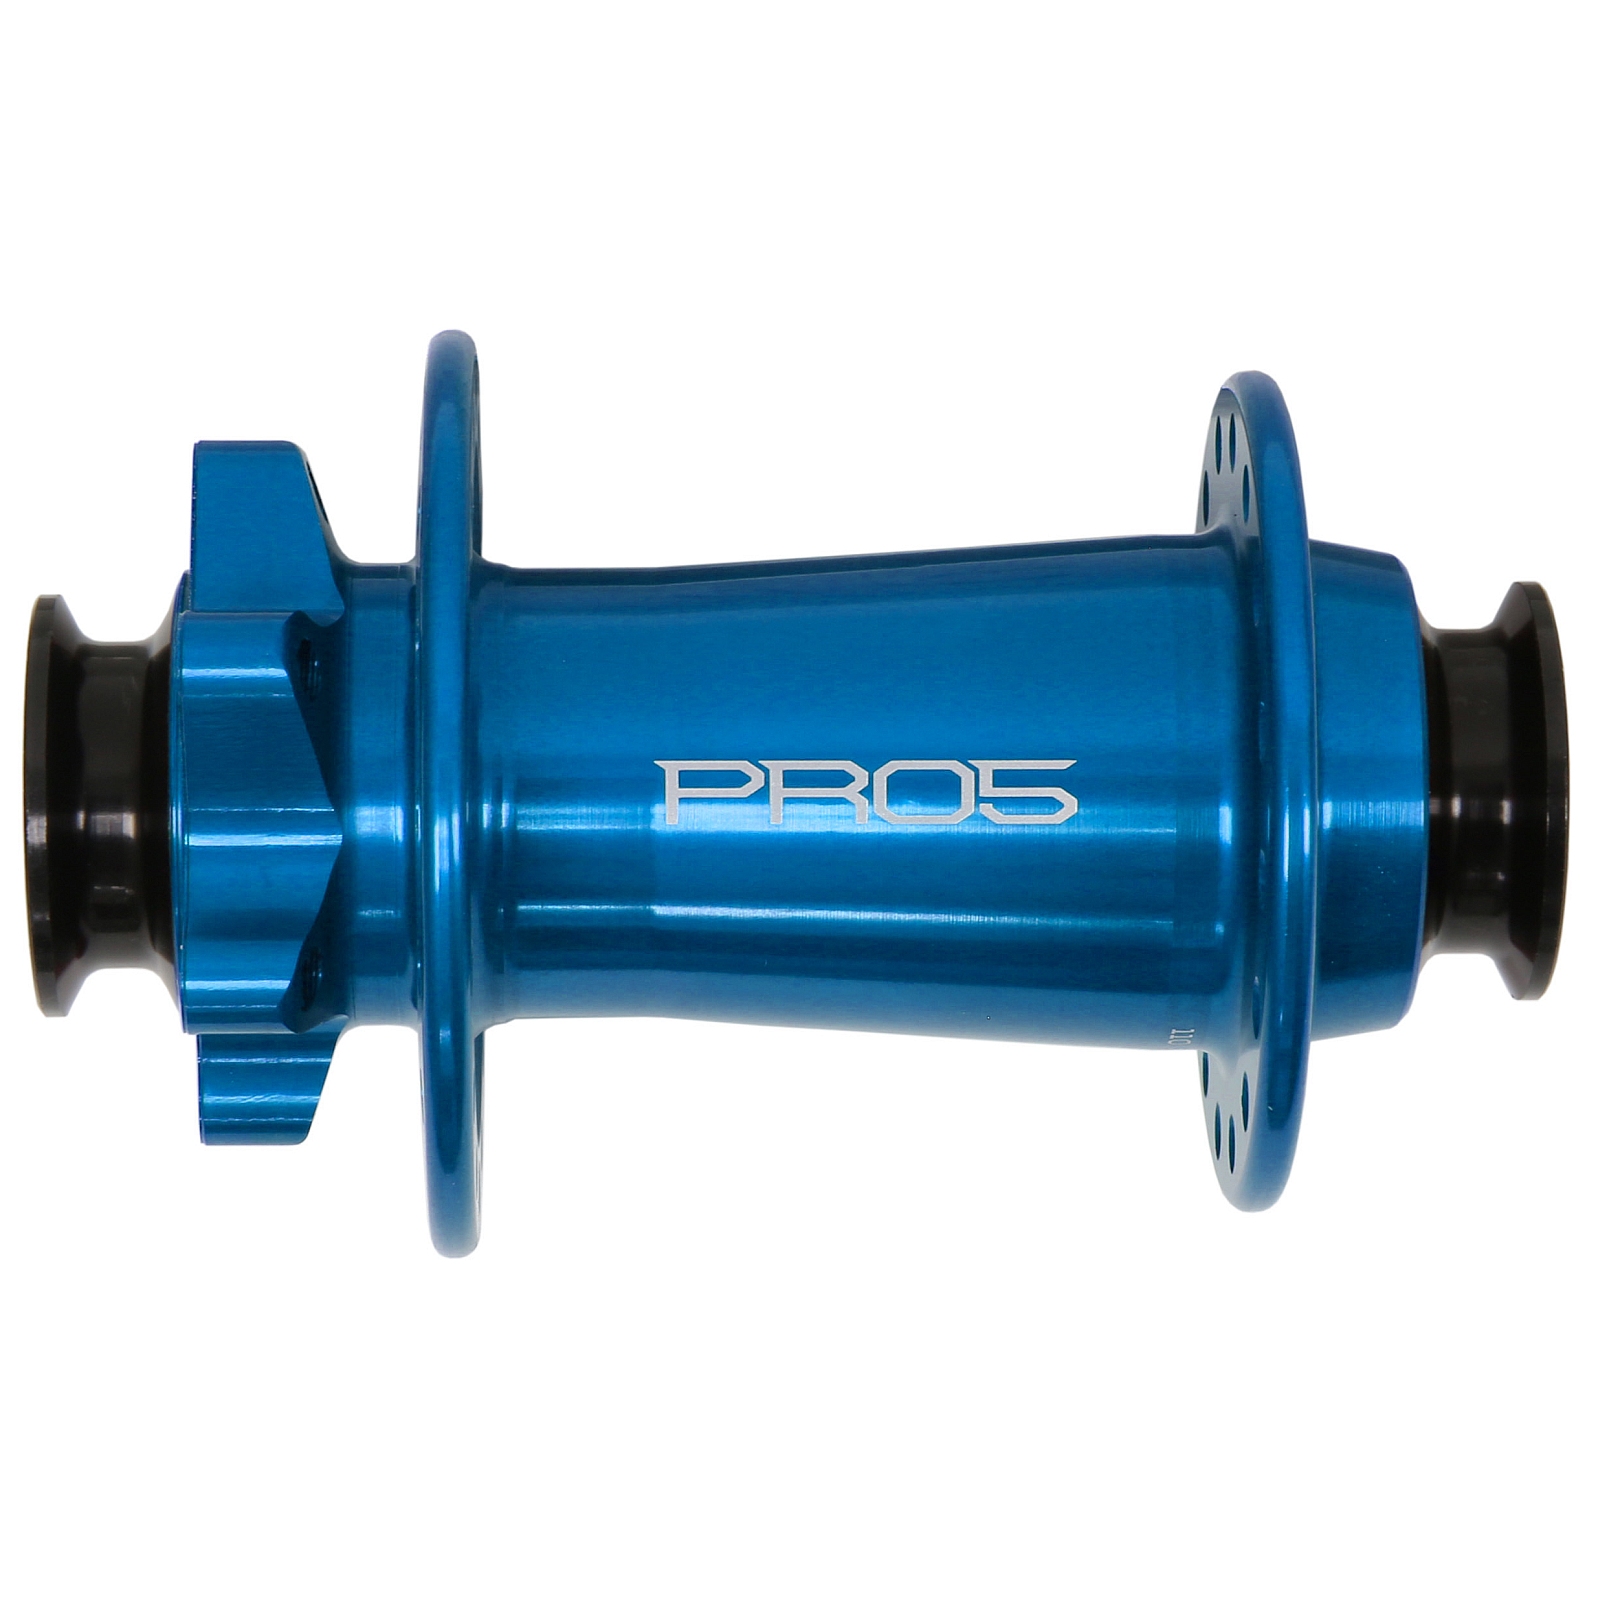 Productfoto van Hope Pro 5 Voorwielnaaf - 6-Bolt - 15x110mm Boost Torque - blauw